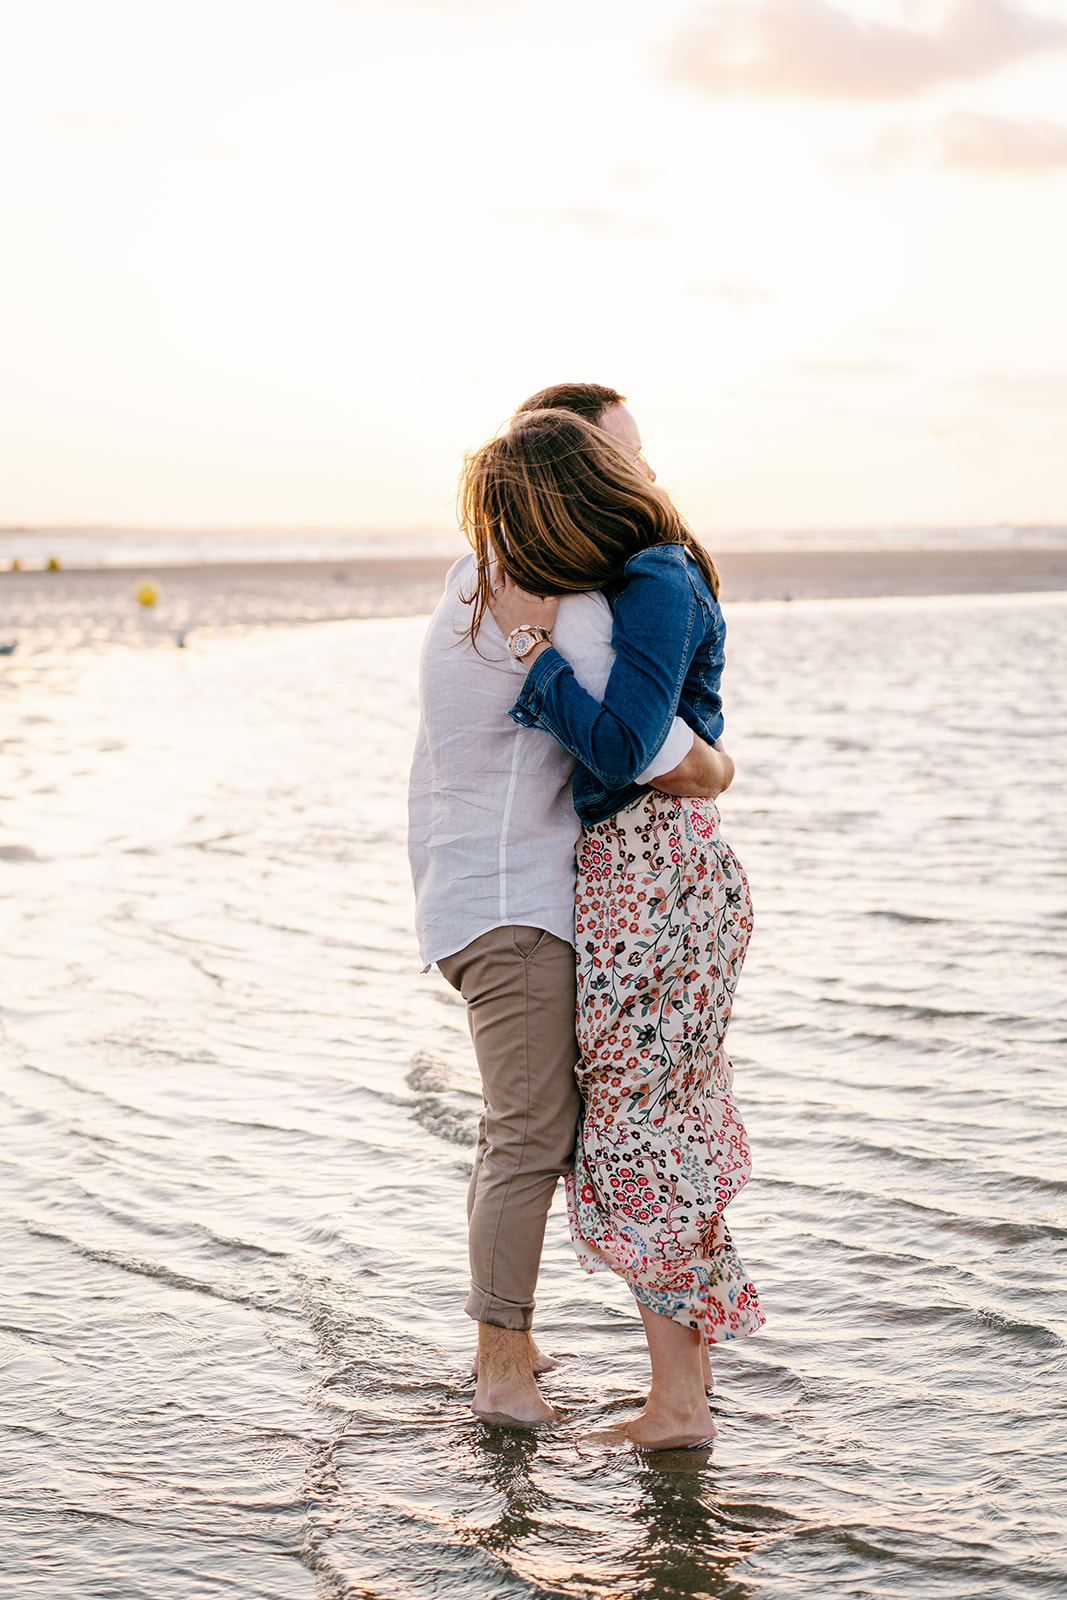 Séance couple sur la plage en Normandie, ils se câlinent les pieds dans l'eau